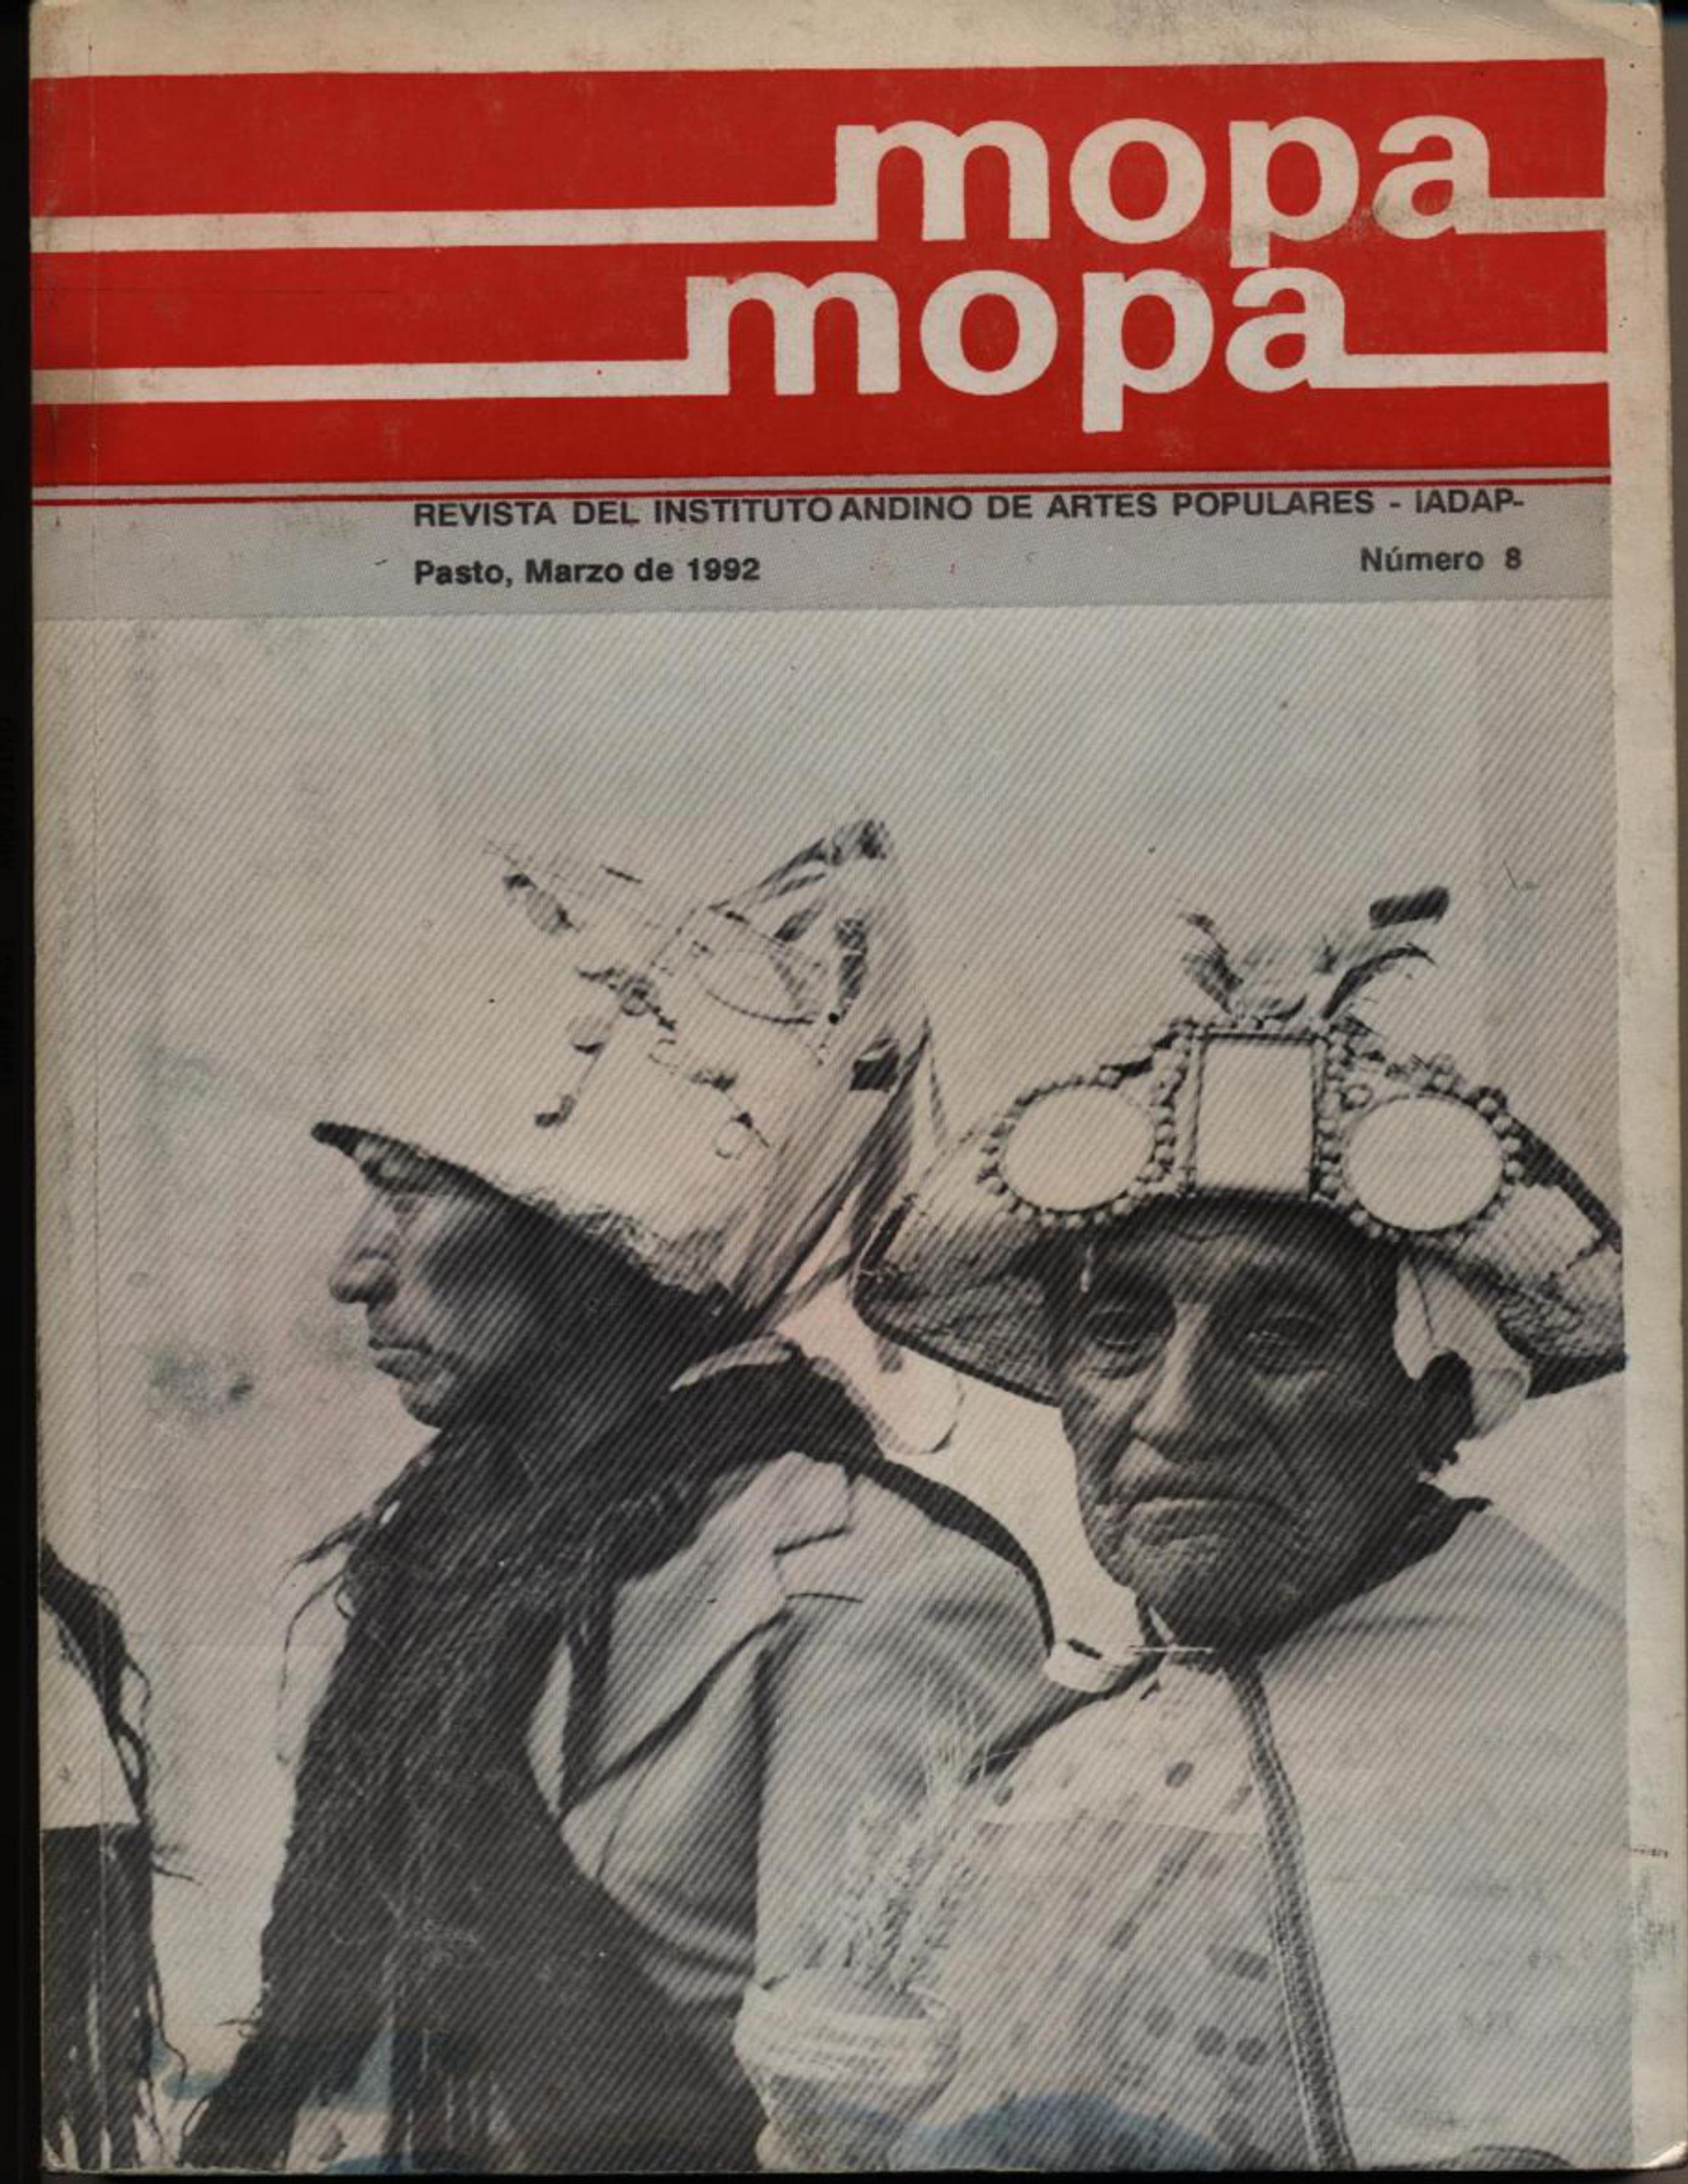 					Ver Vol. 1 Núm. 8 (1992): Revista Mopa Mopa 8
				